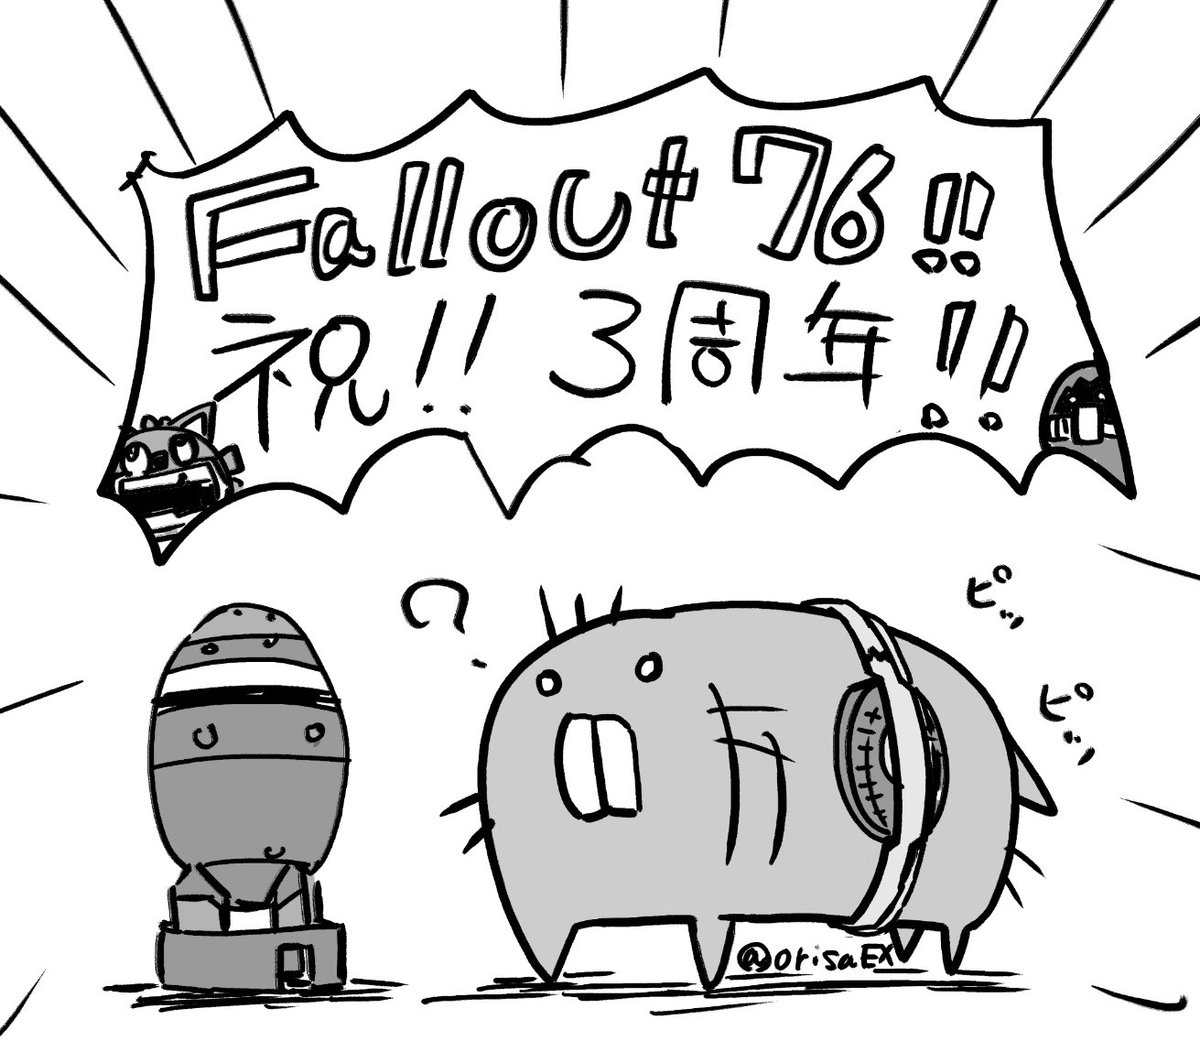 再生の日も3周年だ!!
#Fallout76 